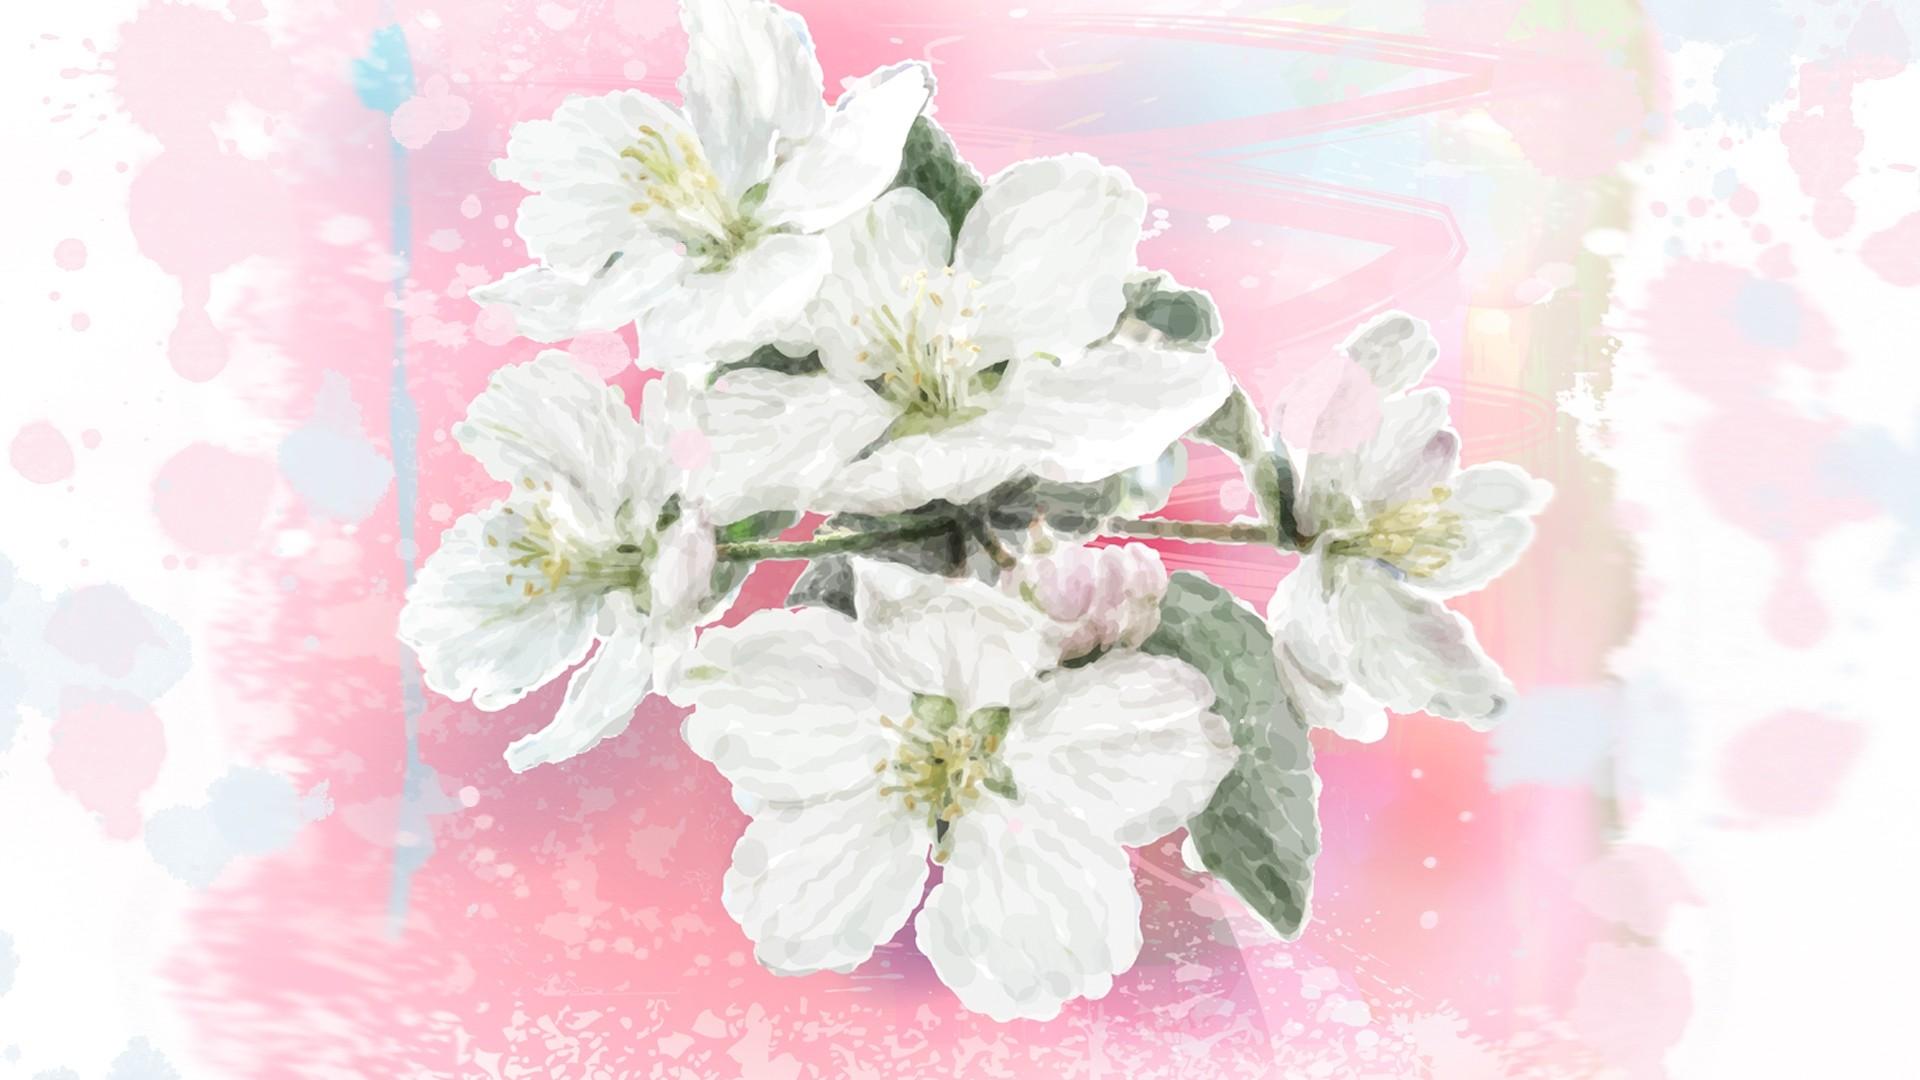 Flowers: Apple Blossom Watercolor Flowers Splatter Spring Blossoms